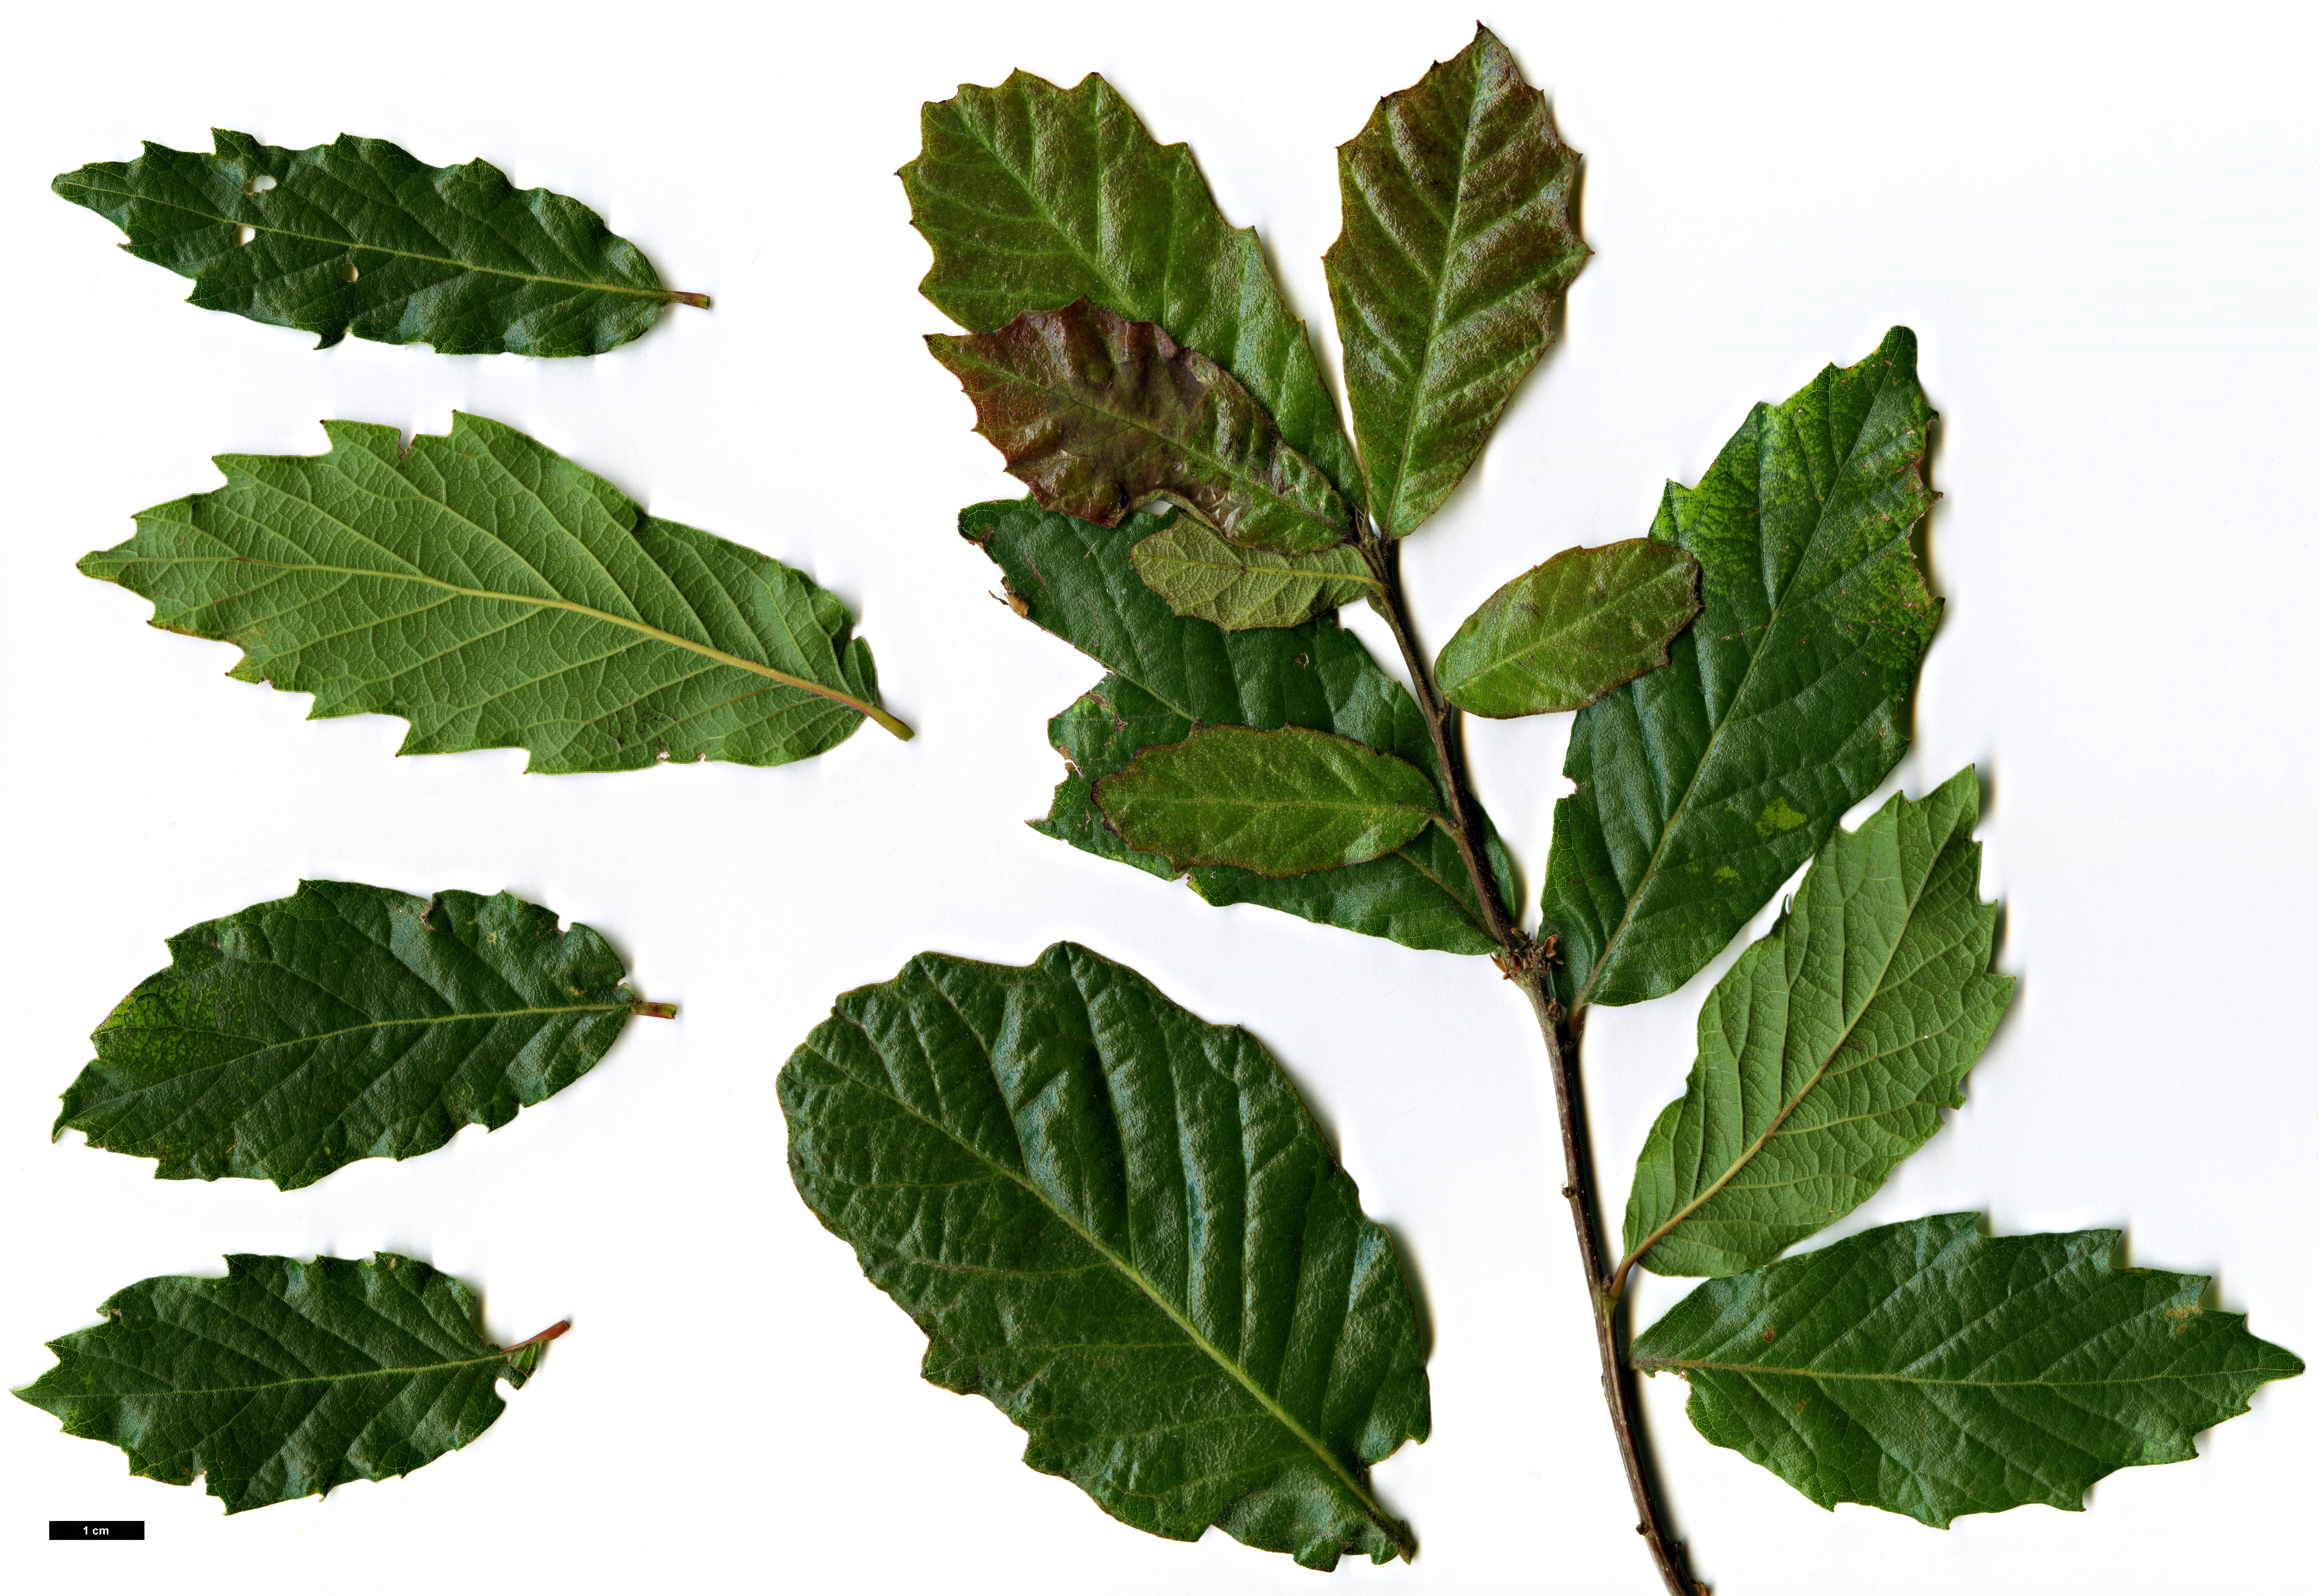 High resolution image: Family: Fagaceae - Genus: Quercus - Taxon: tuberculata